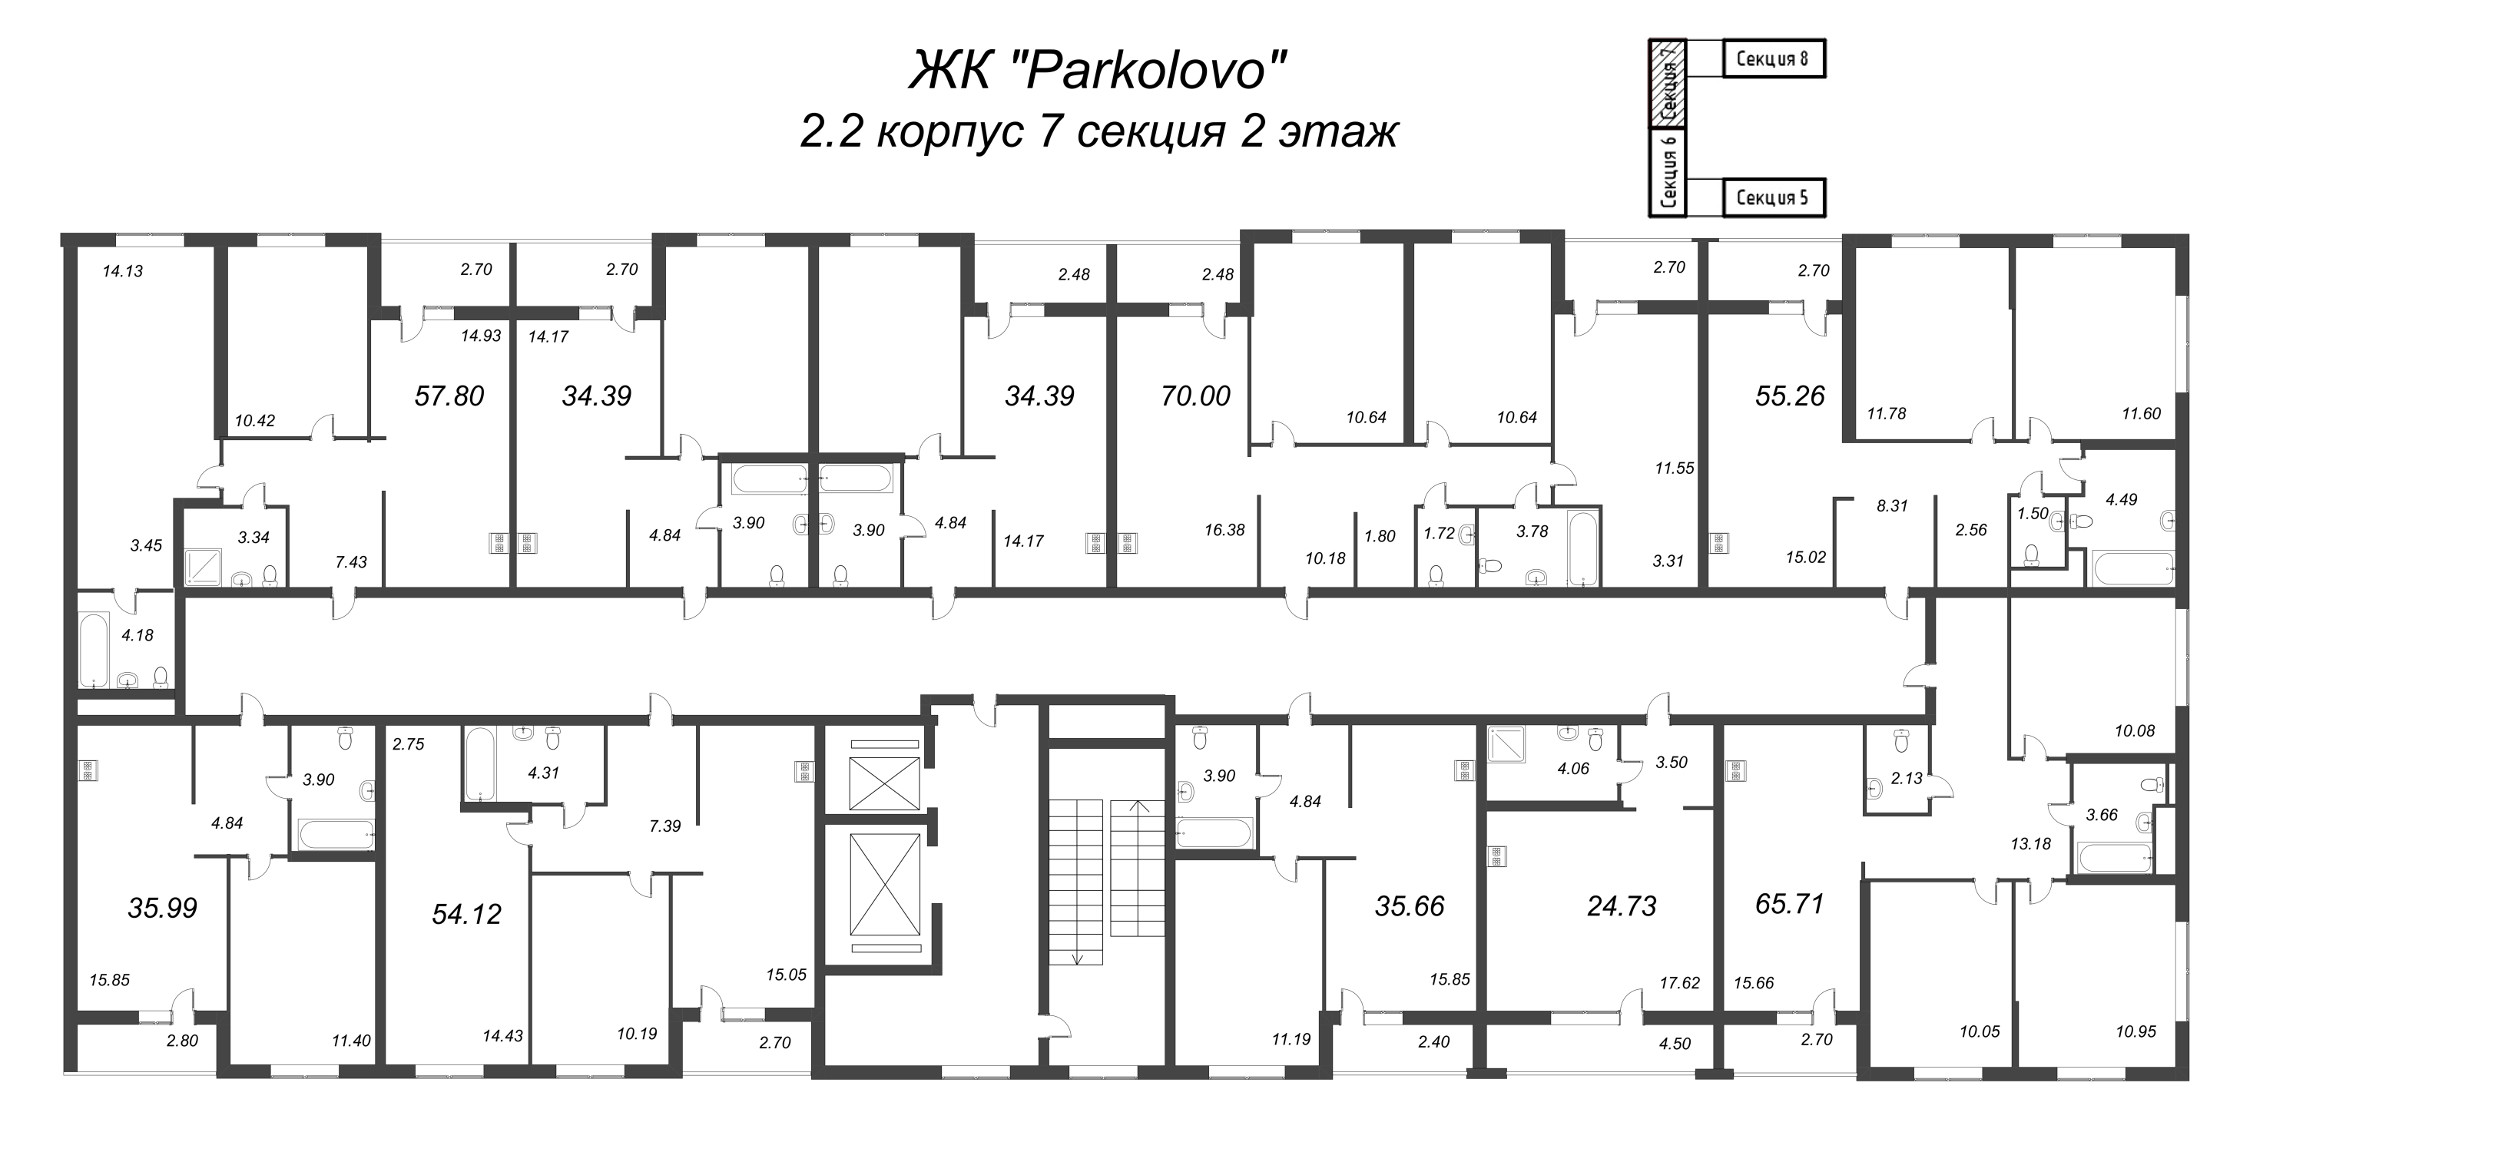 3-комнатная (Евро) квартира, 55.26 м² в ЖК "Parkolovo" - планировка этажа